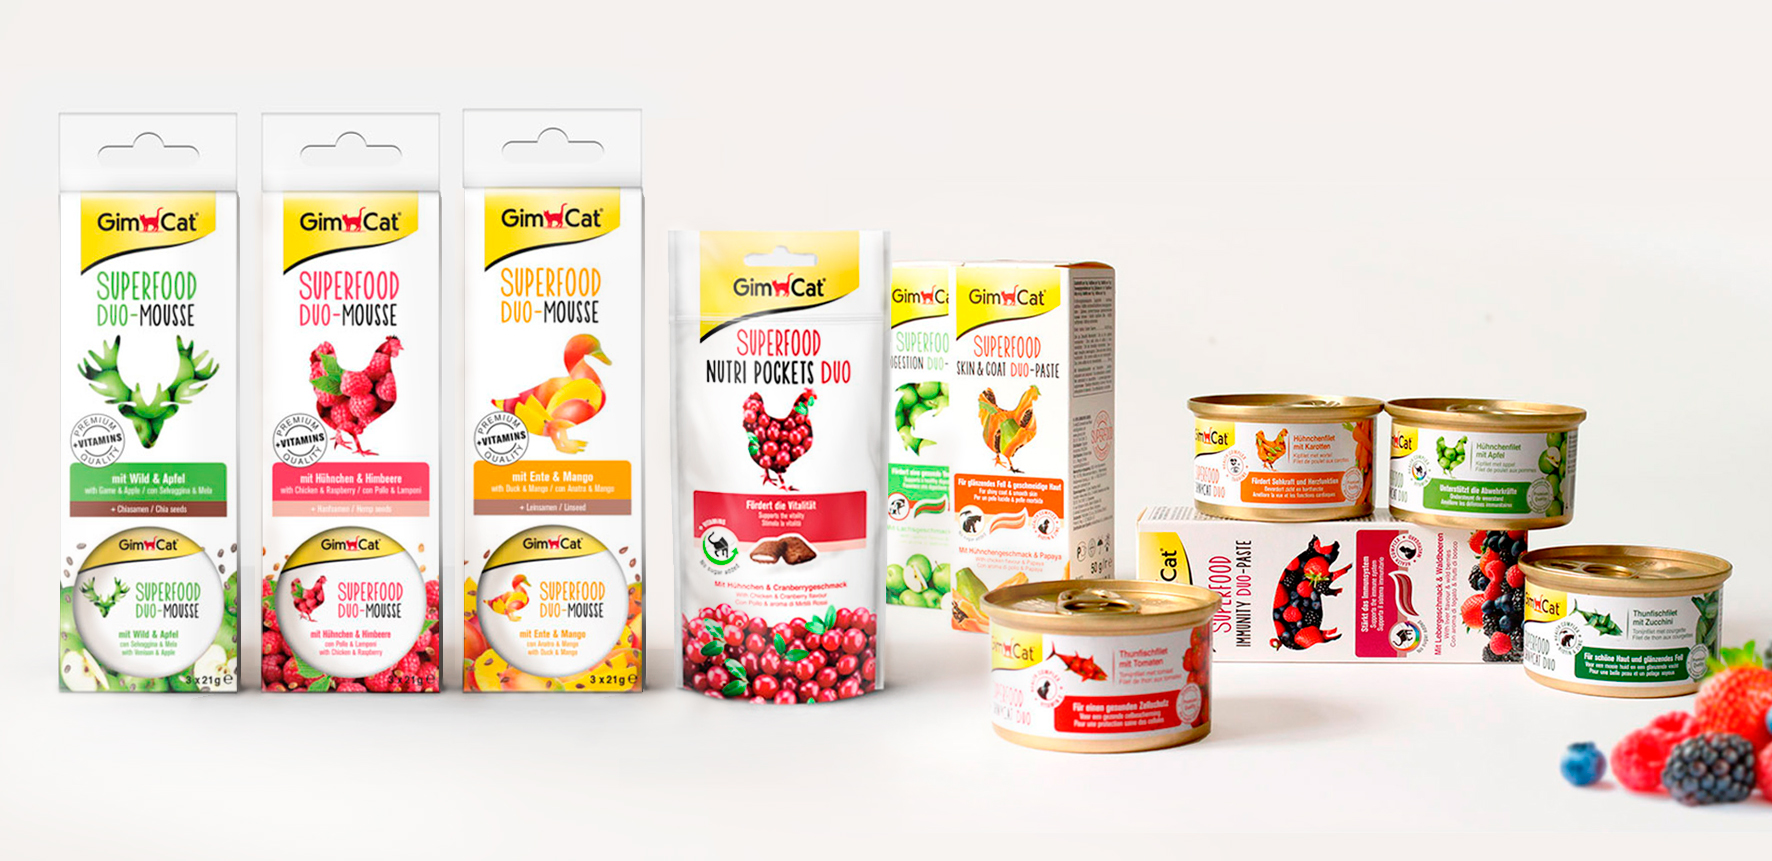 Packaging Design, nourriture pour chats "Superfood", riches en fruits, légumes et vitamines, pour la marque allemande GimCat